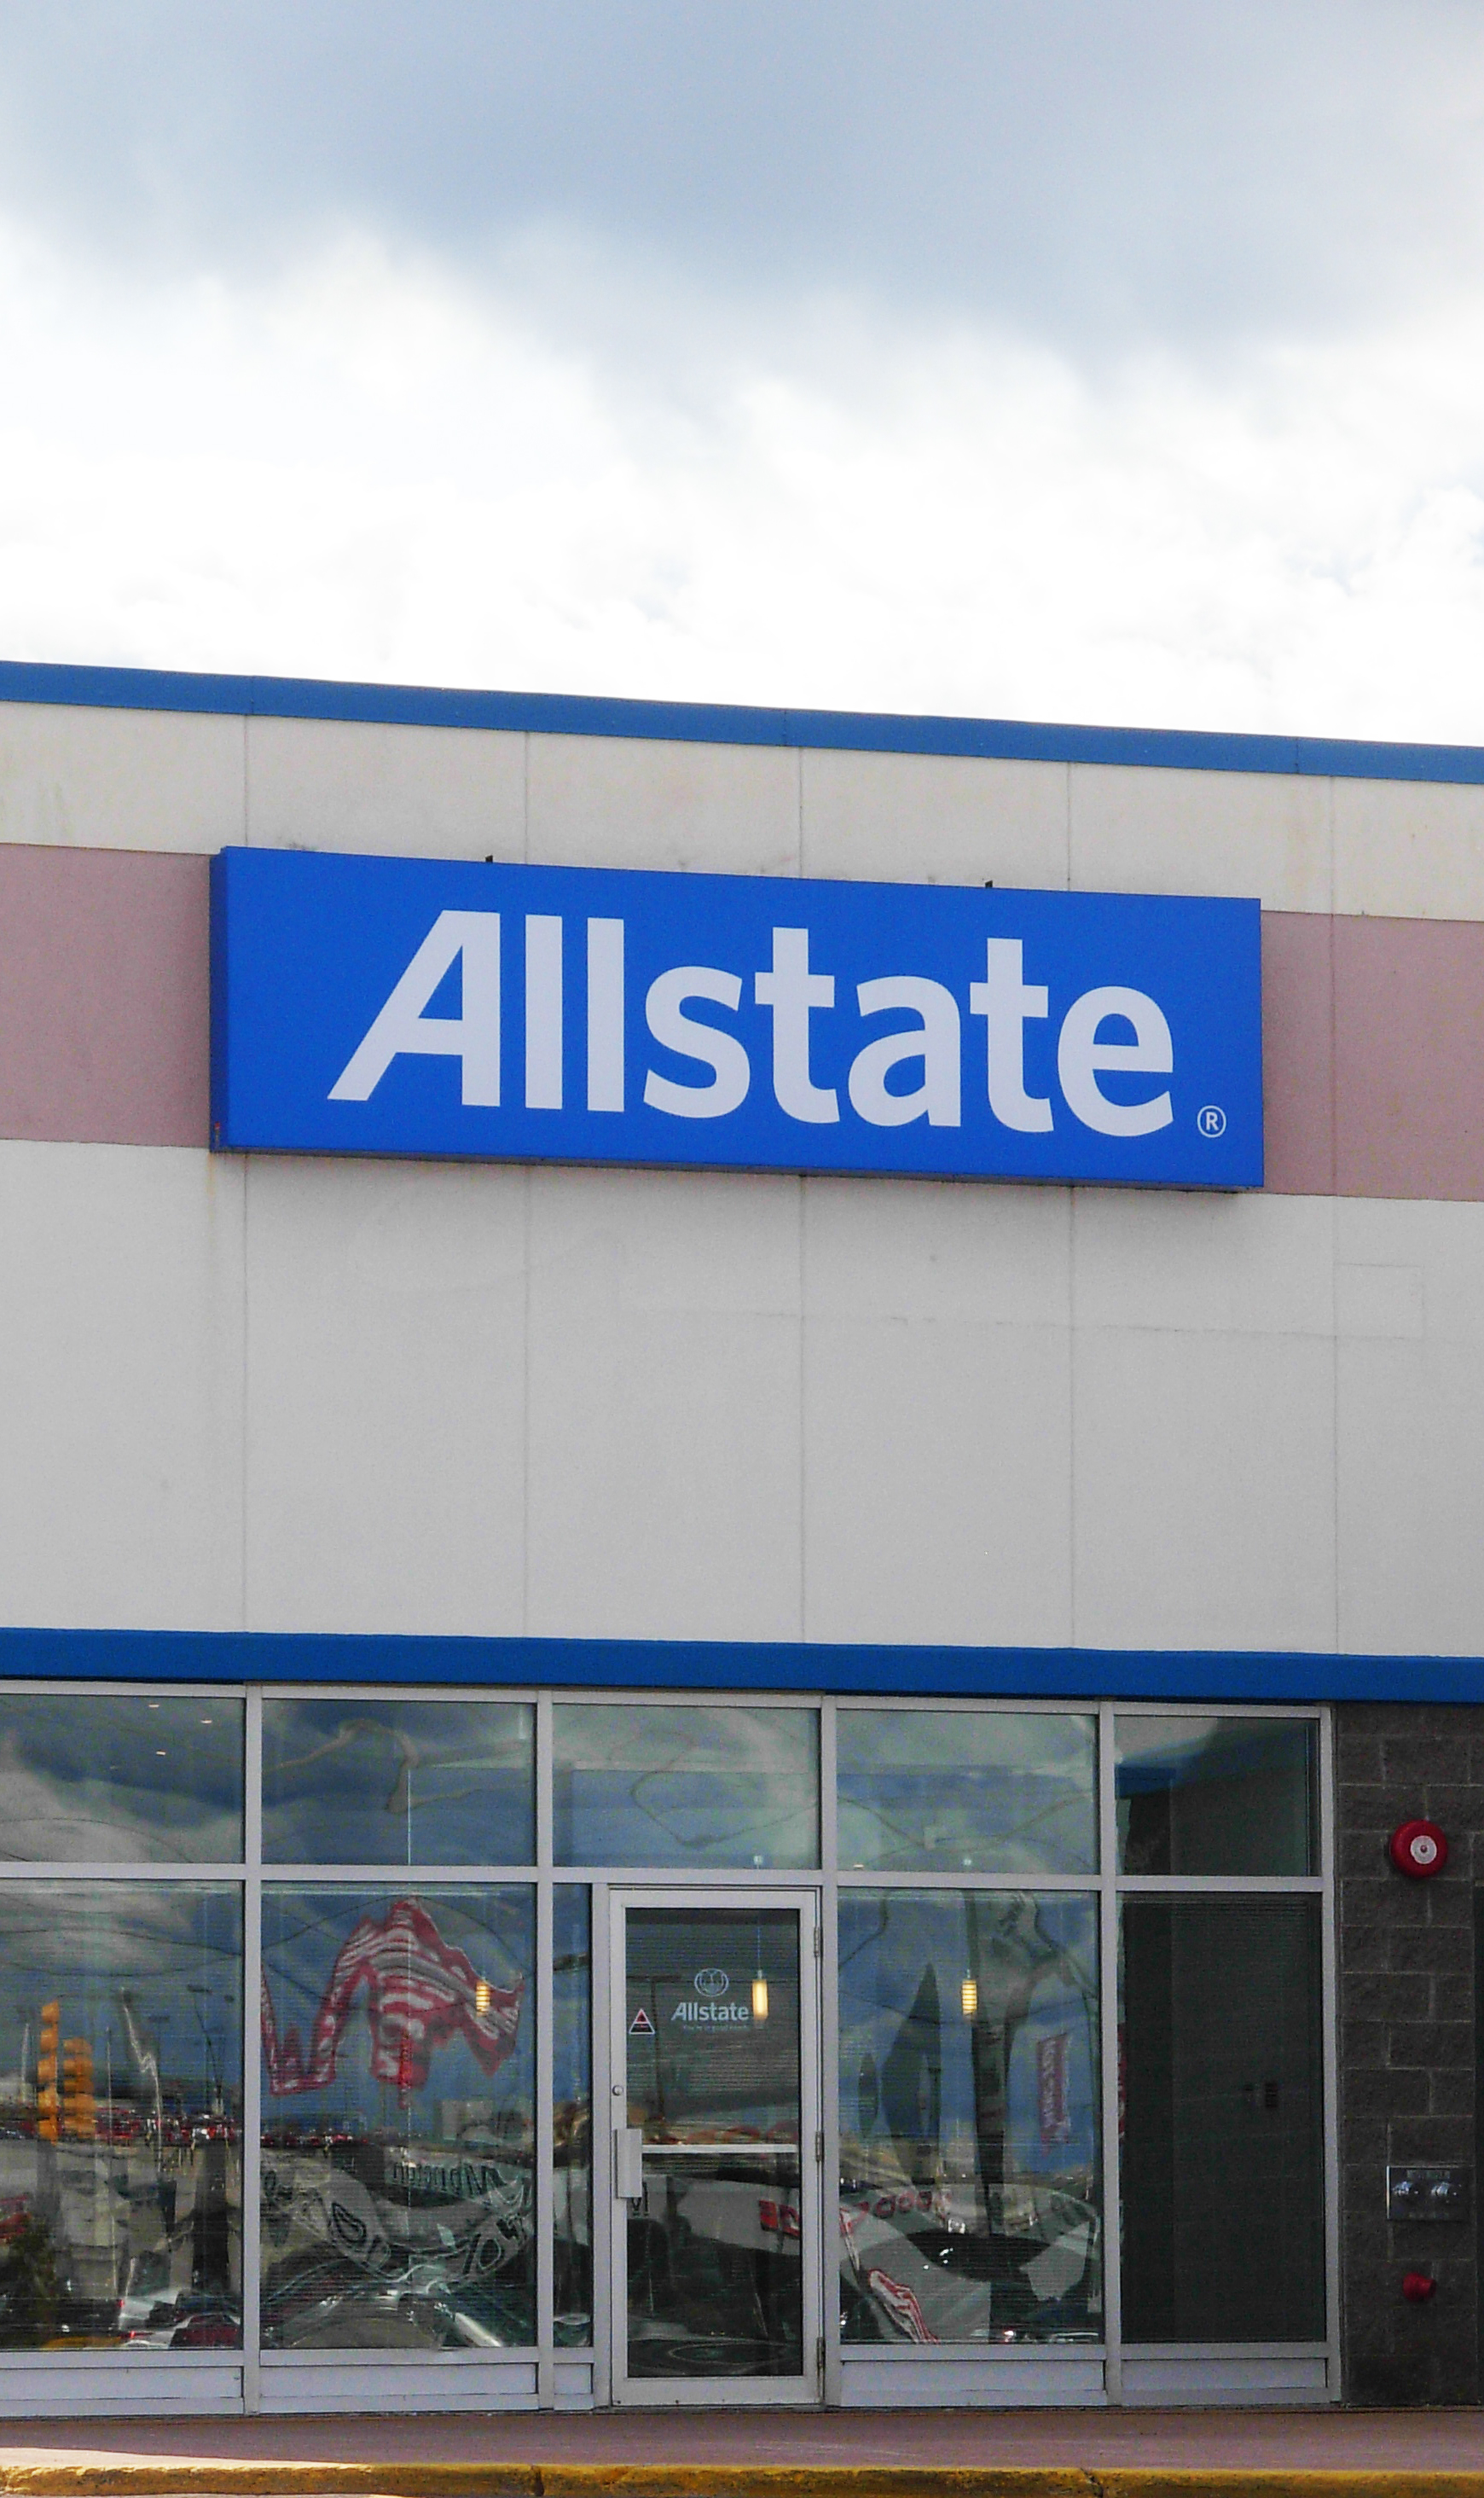 Allstate - Wikipedia